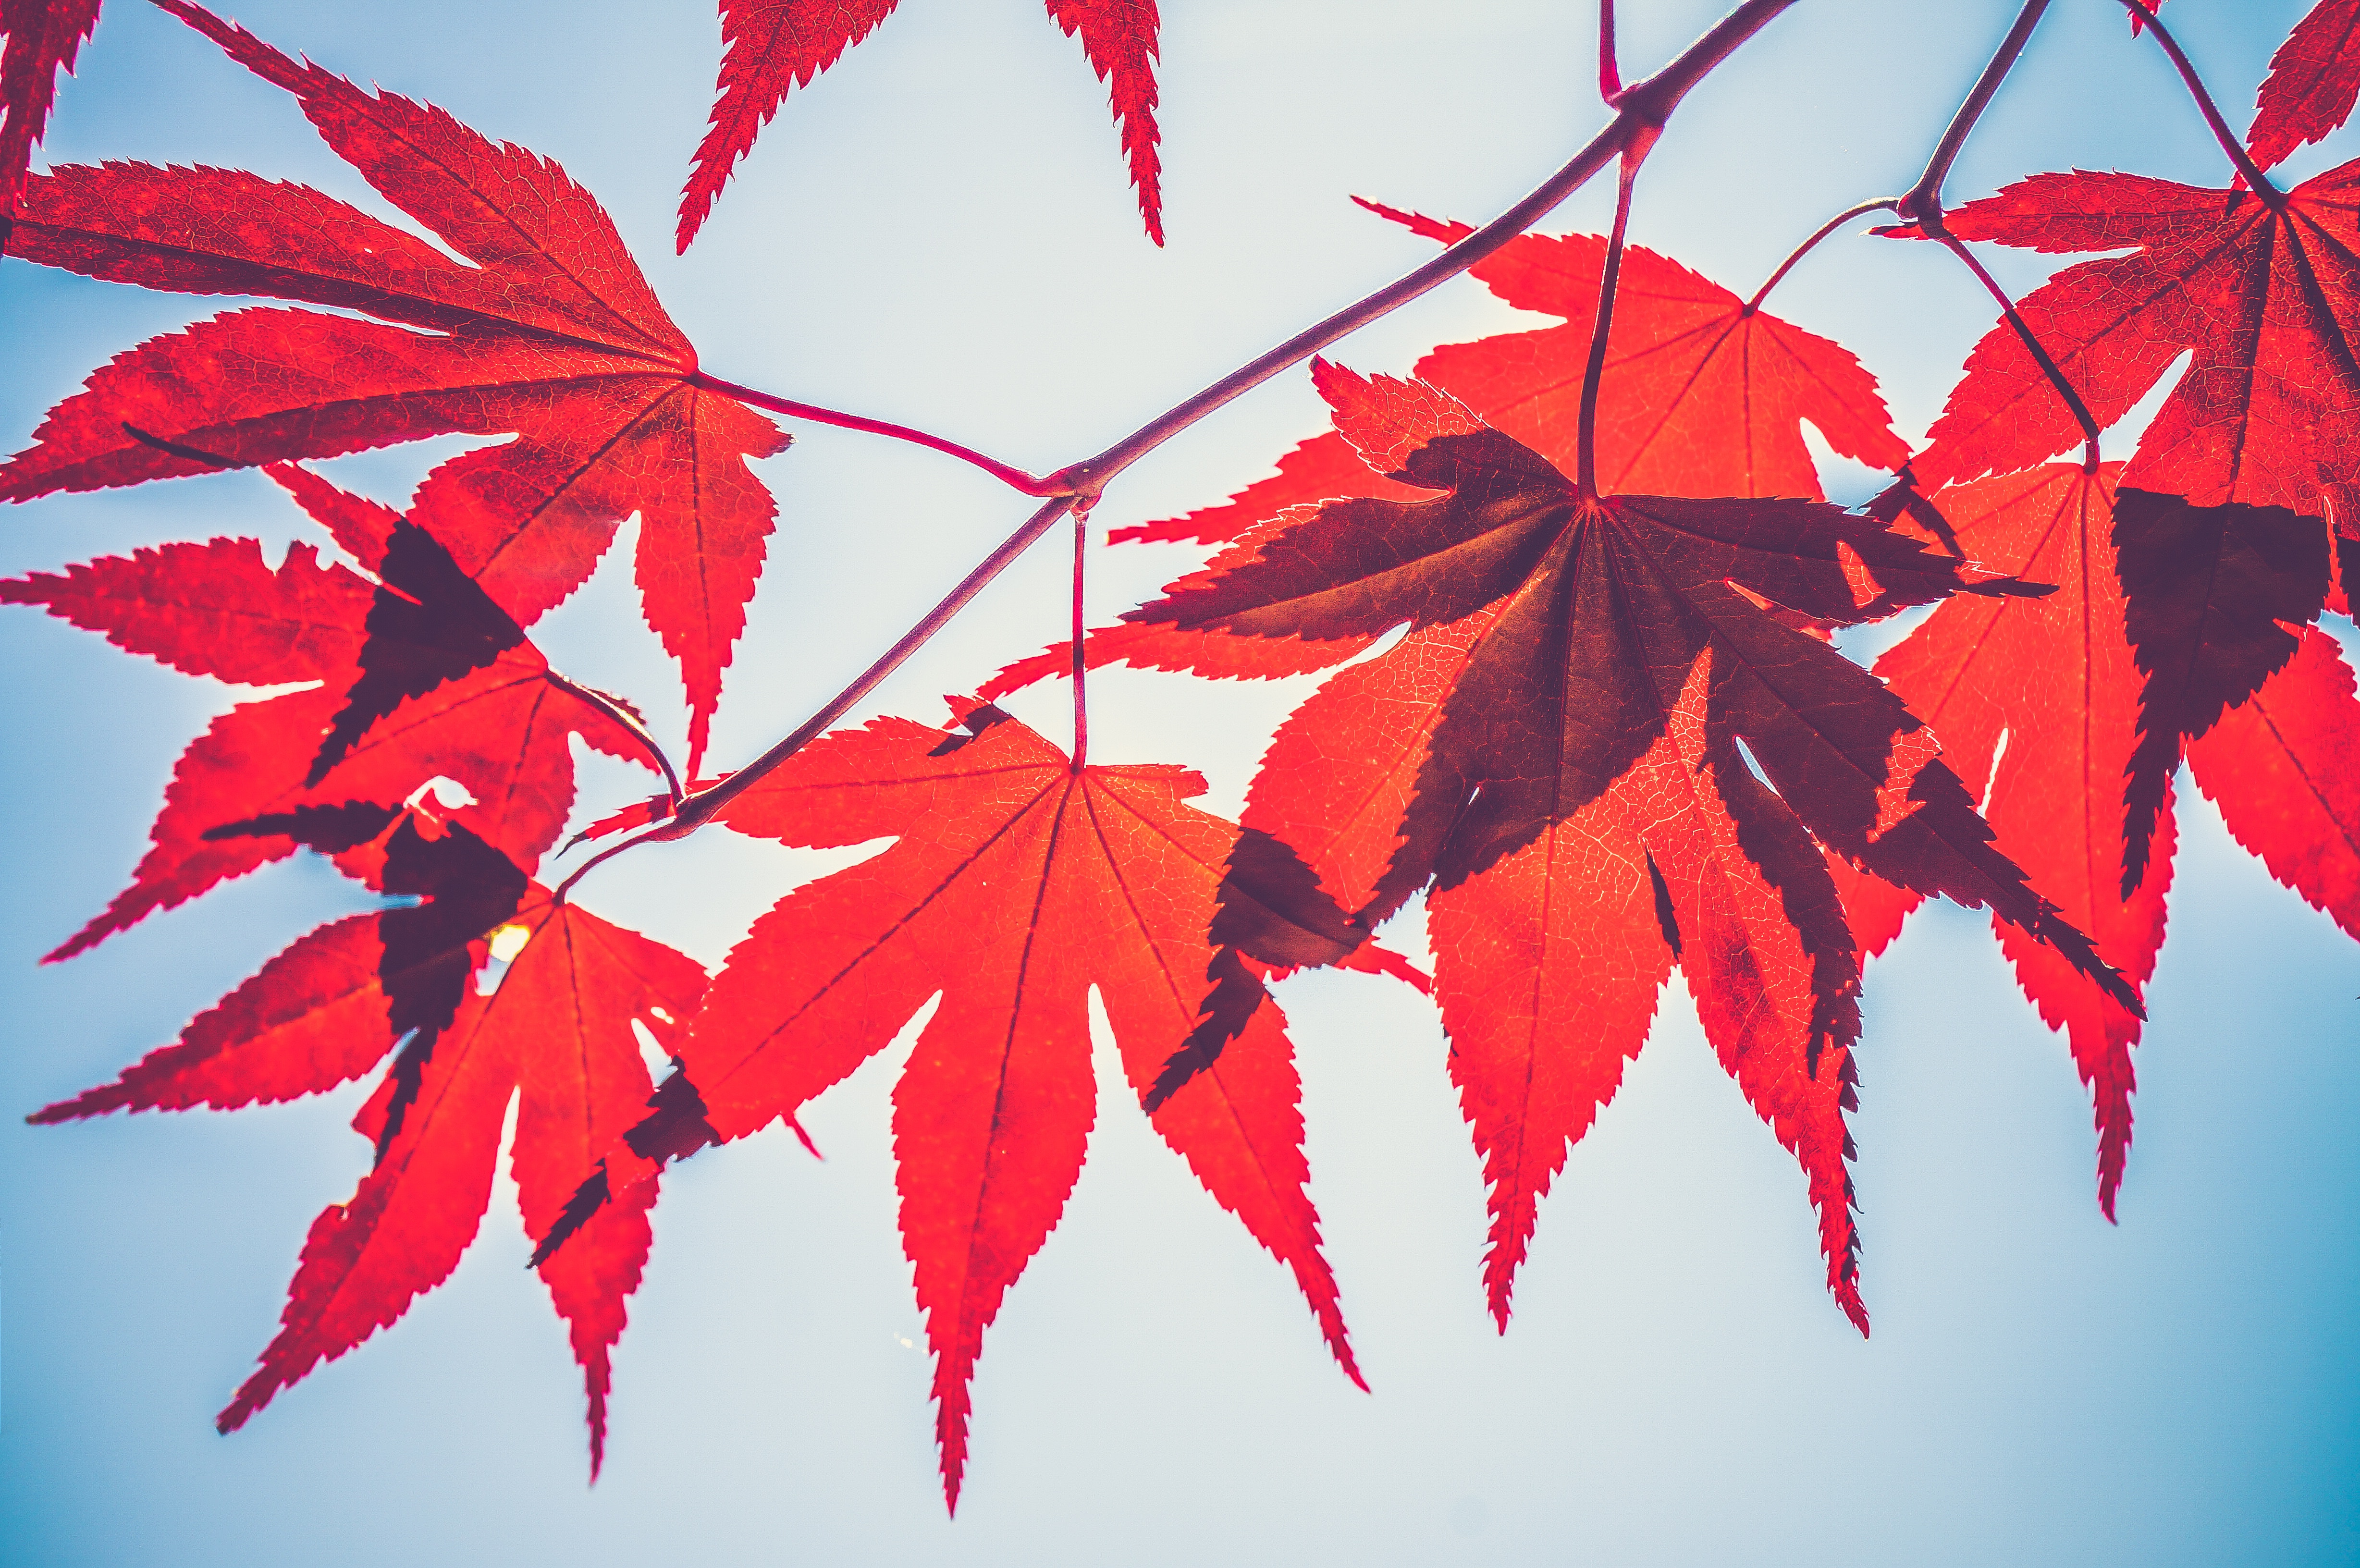 落叶是一种自然现象秋天,大多数落叶植物和树木开始落叶叶子是黄色